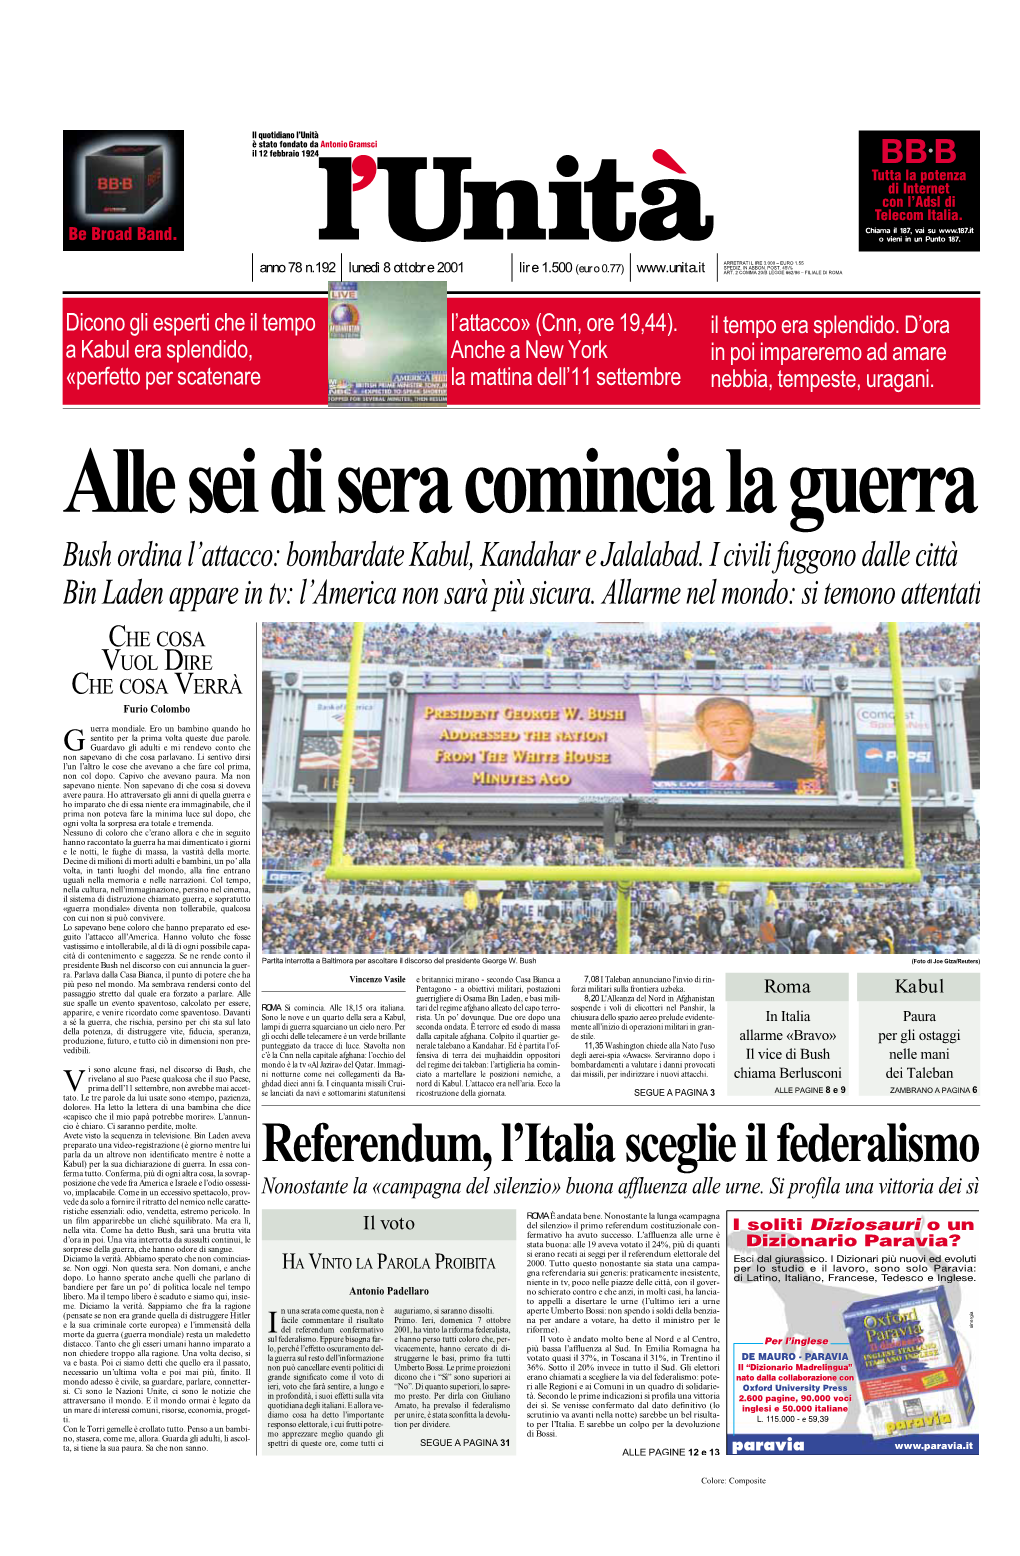 Referendum, L'italia Sceglie Il Federalismo